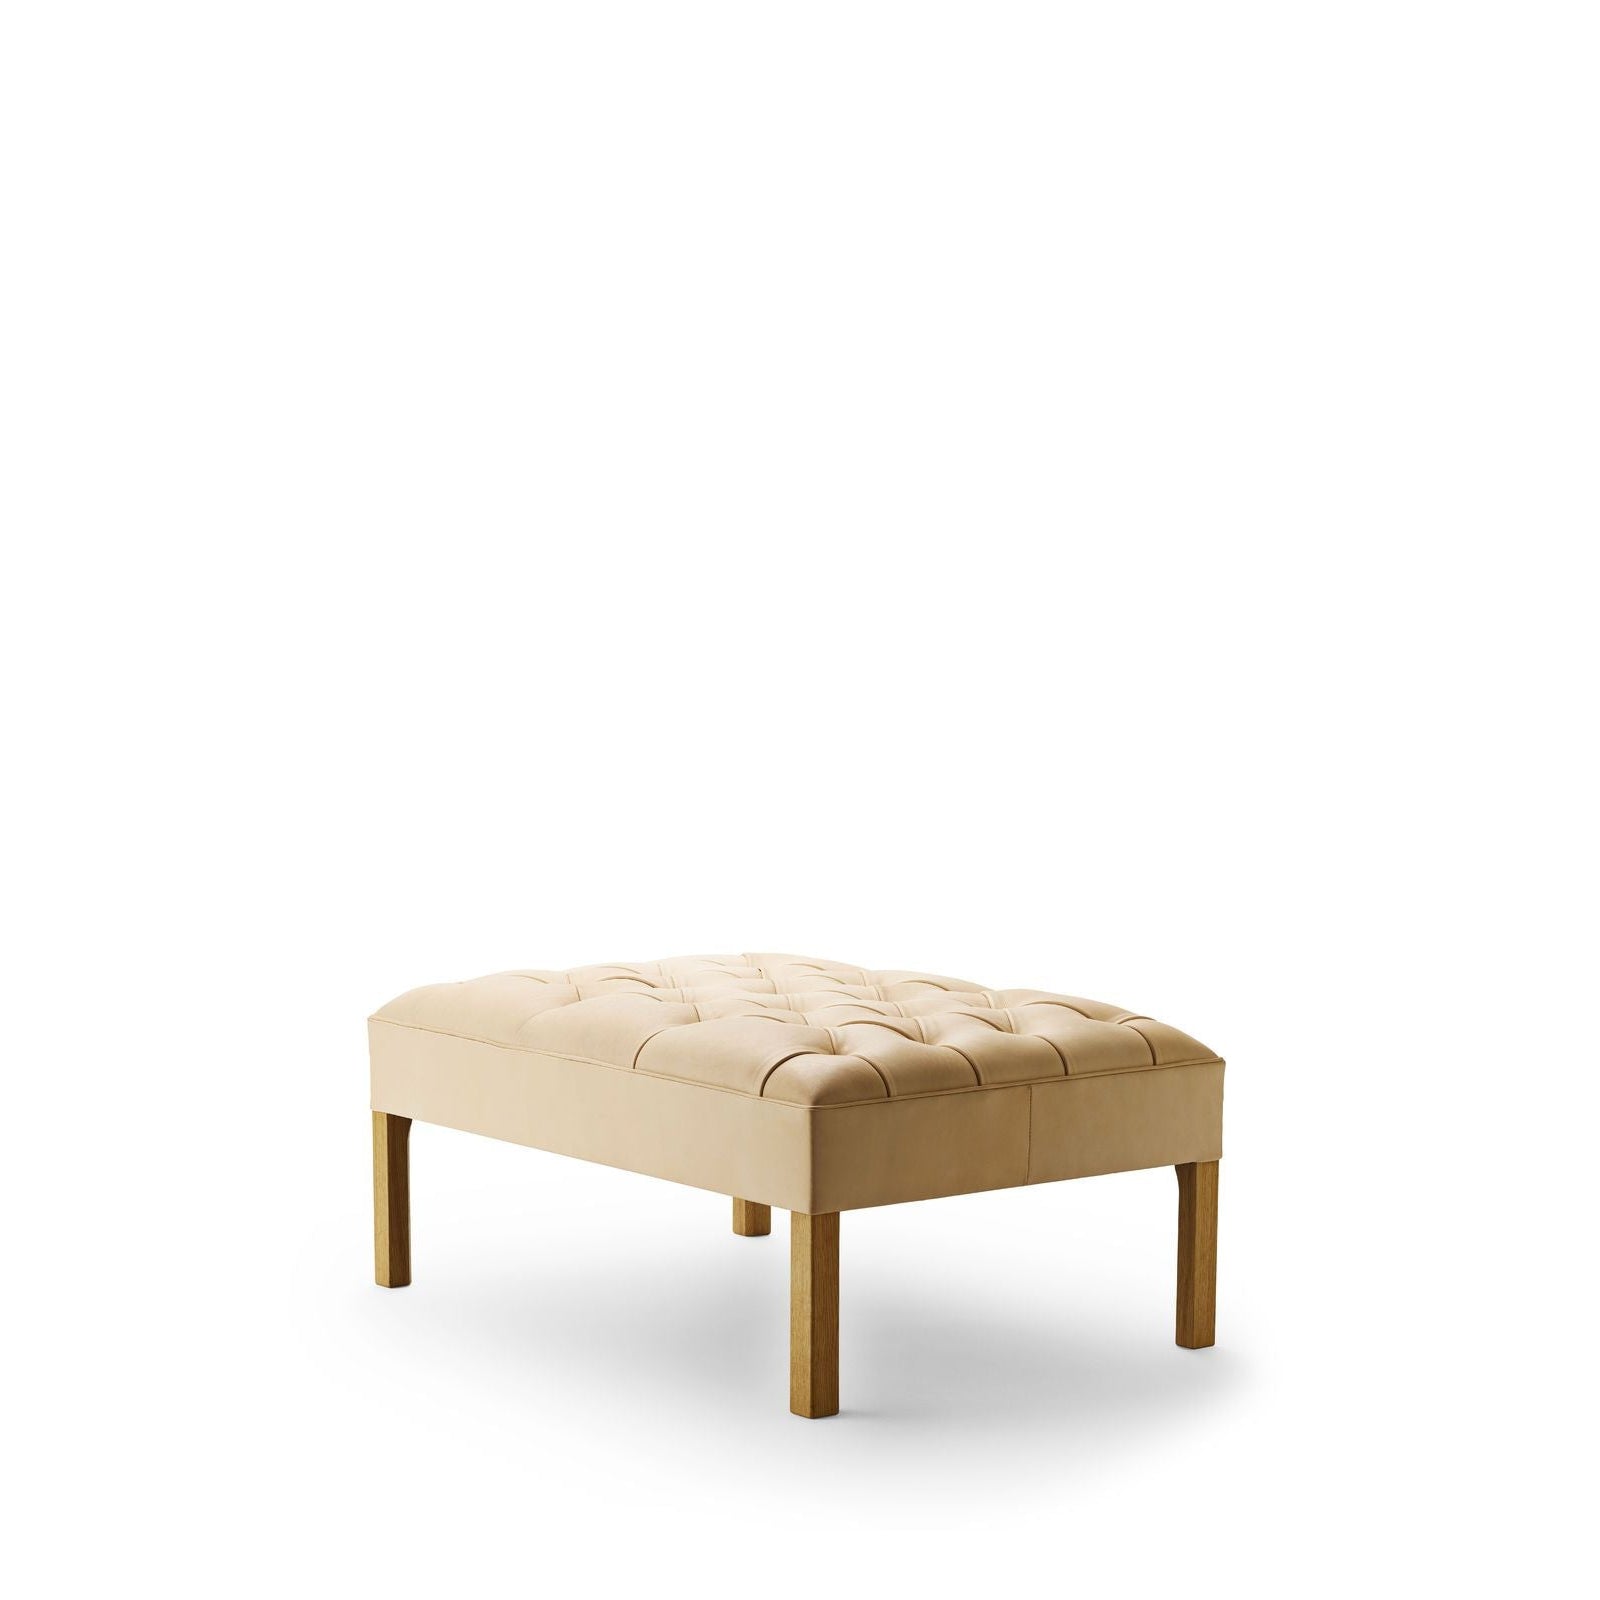 Carl Hansen KK48651 Tilføjelse sofa, olieret eg/beige læder